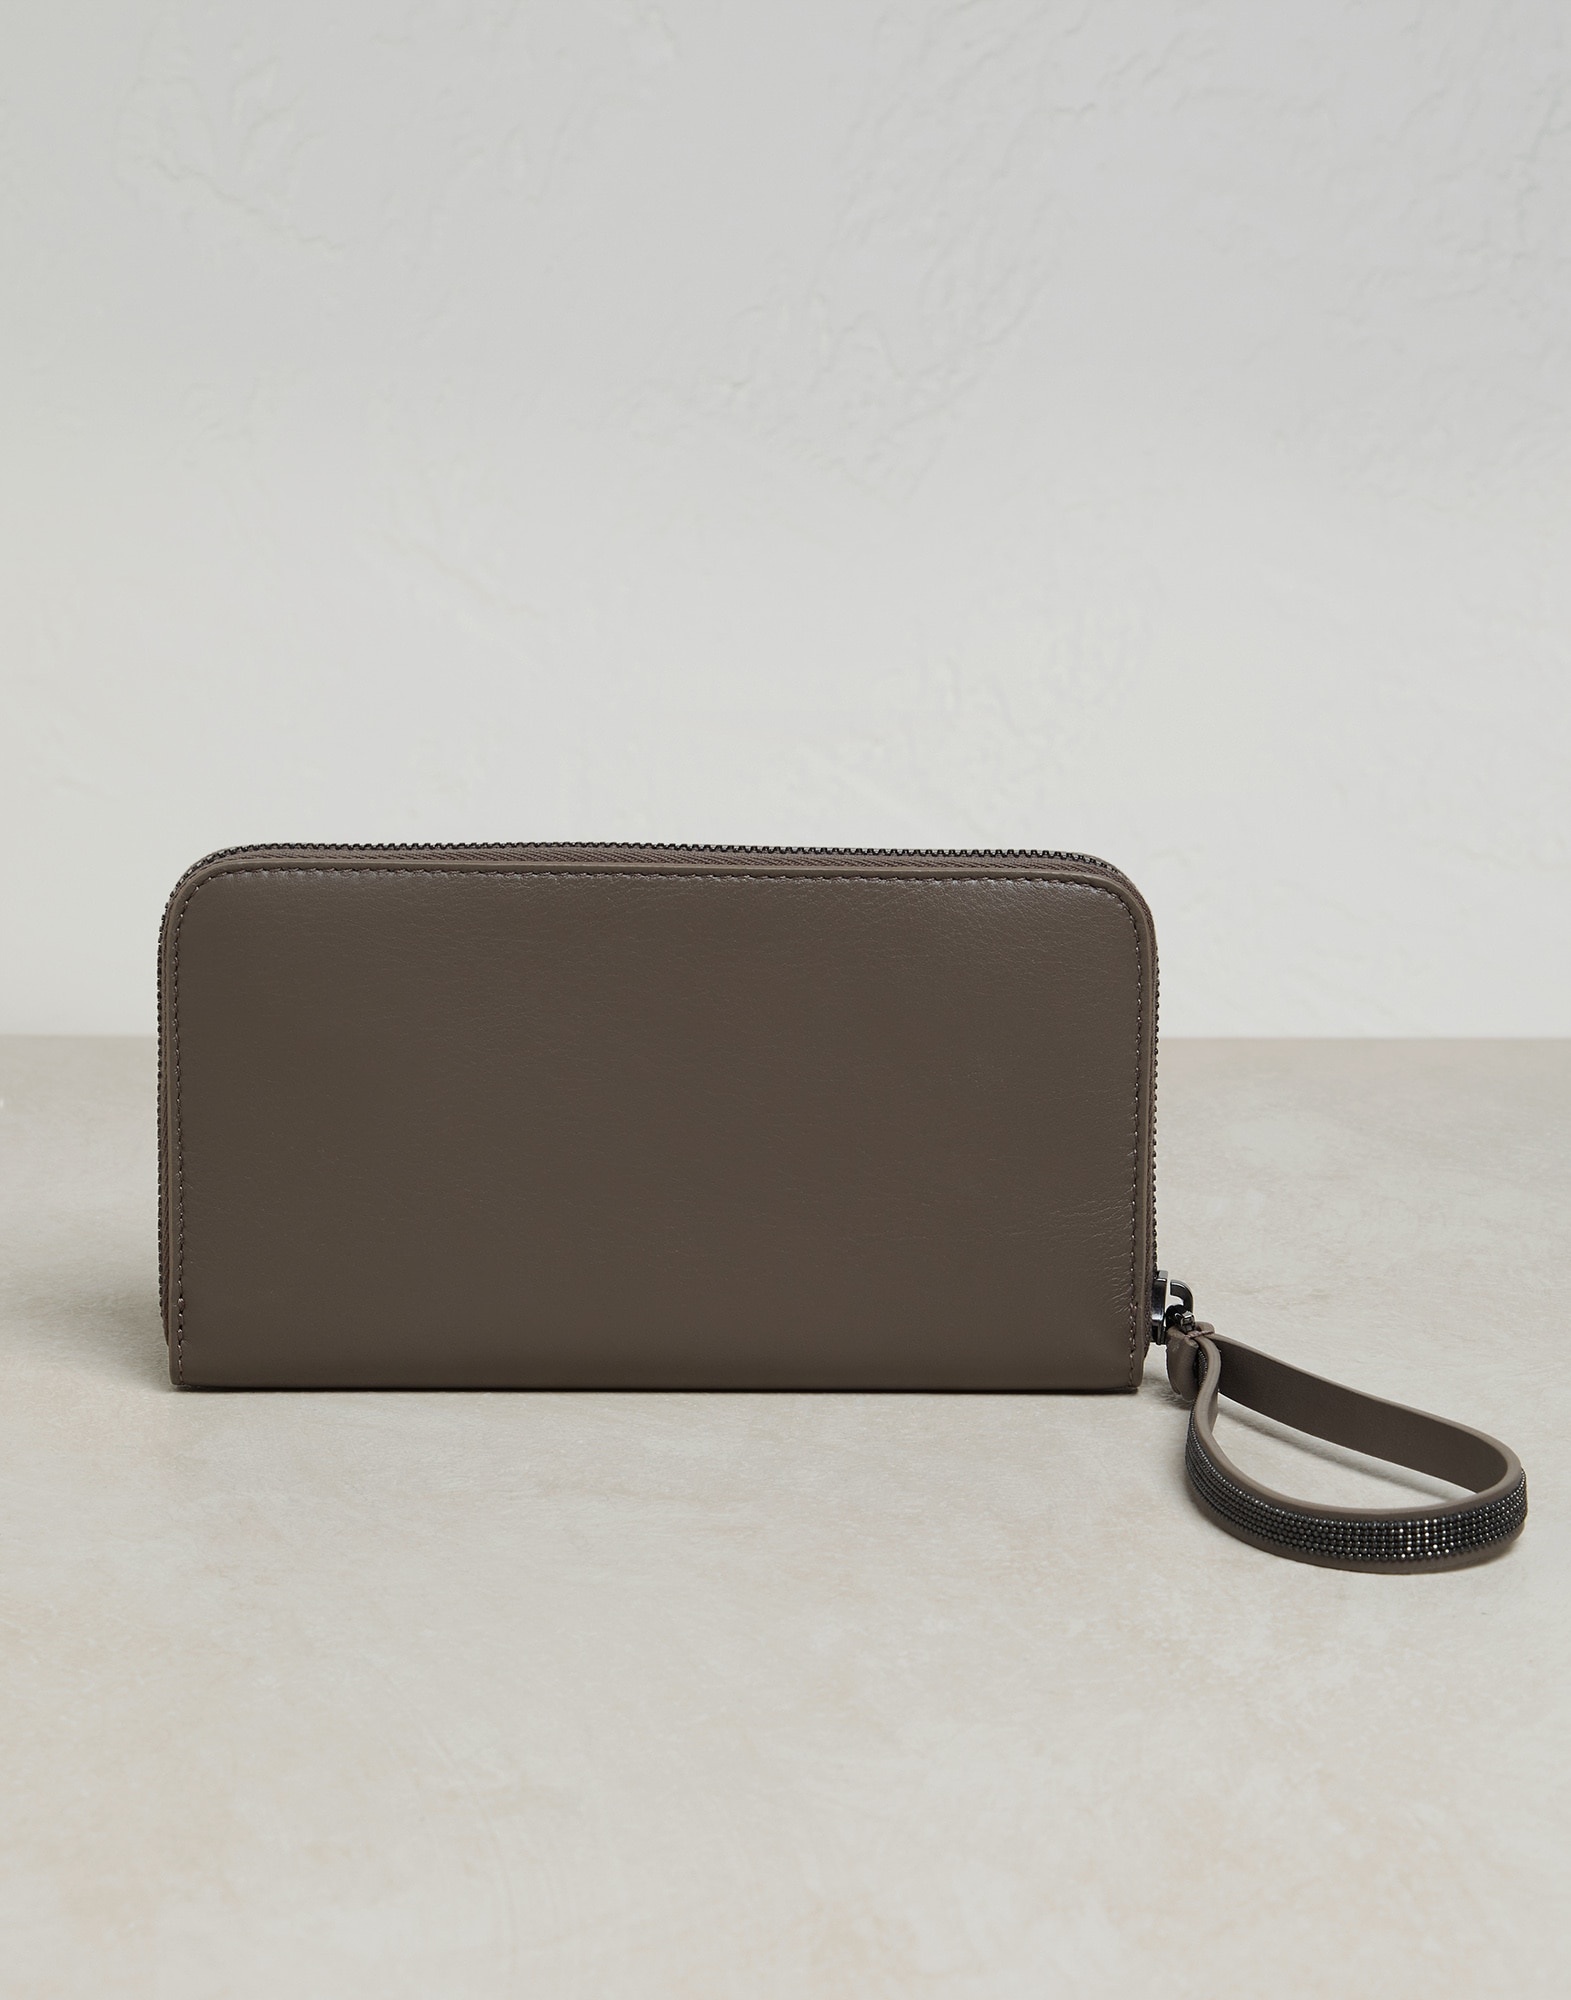 Matte calfskin wallet with precious zipper pull - 2